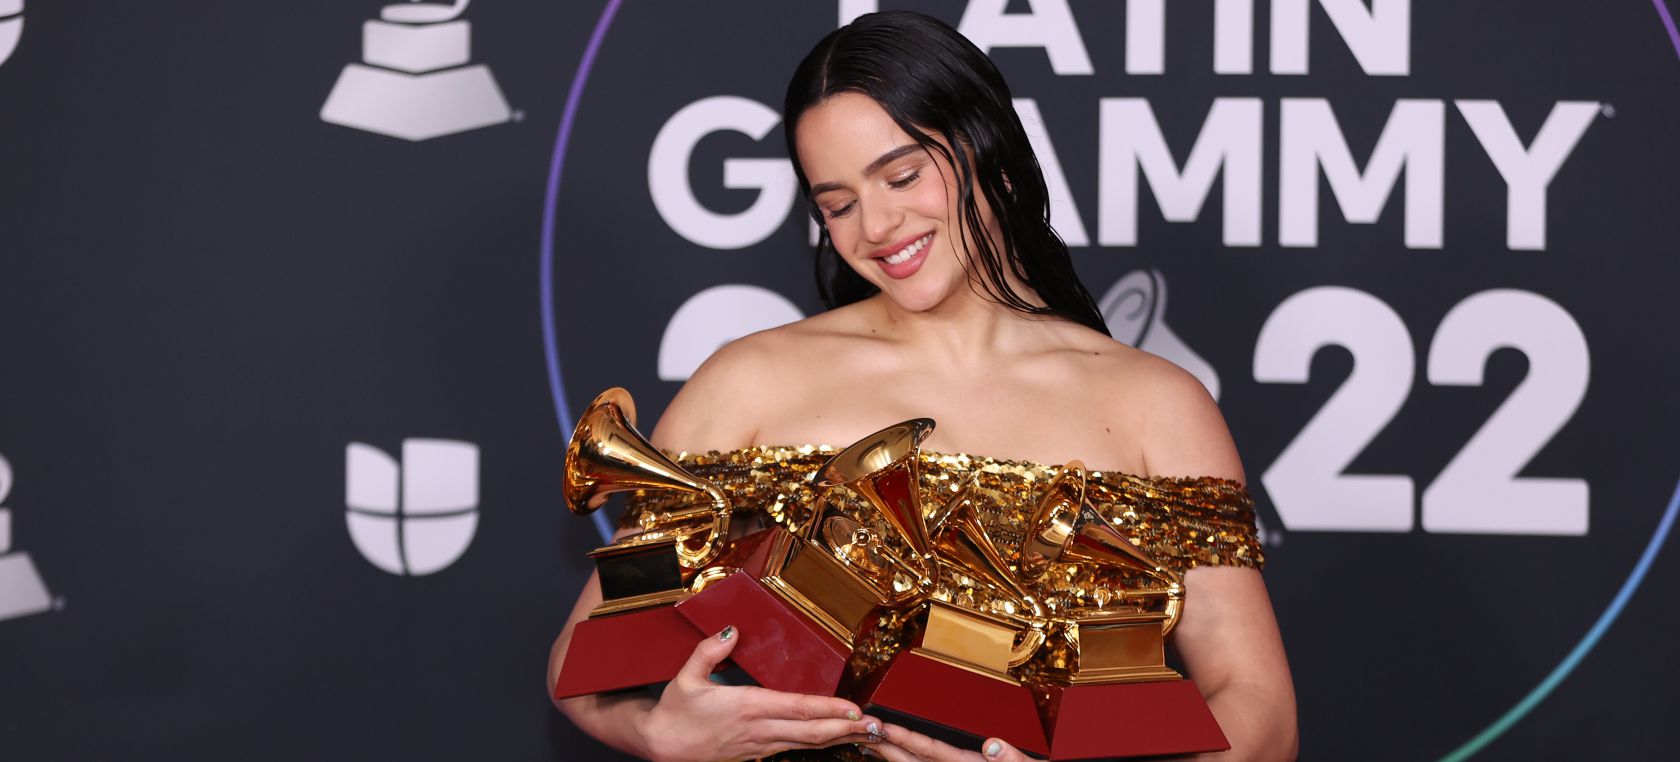 Los ganadores de los Premios Latin Grammy 2022: Rosalía, Bad Bunny, Jorge Drexler y más